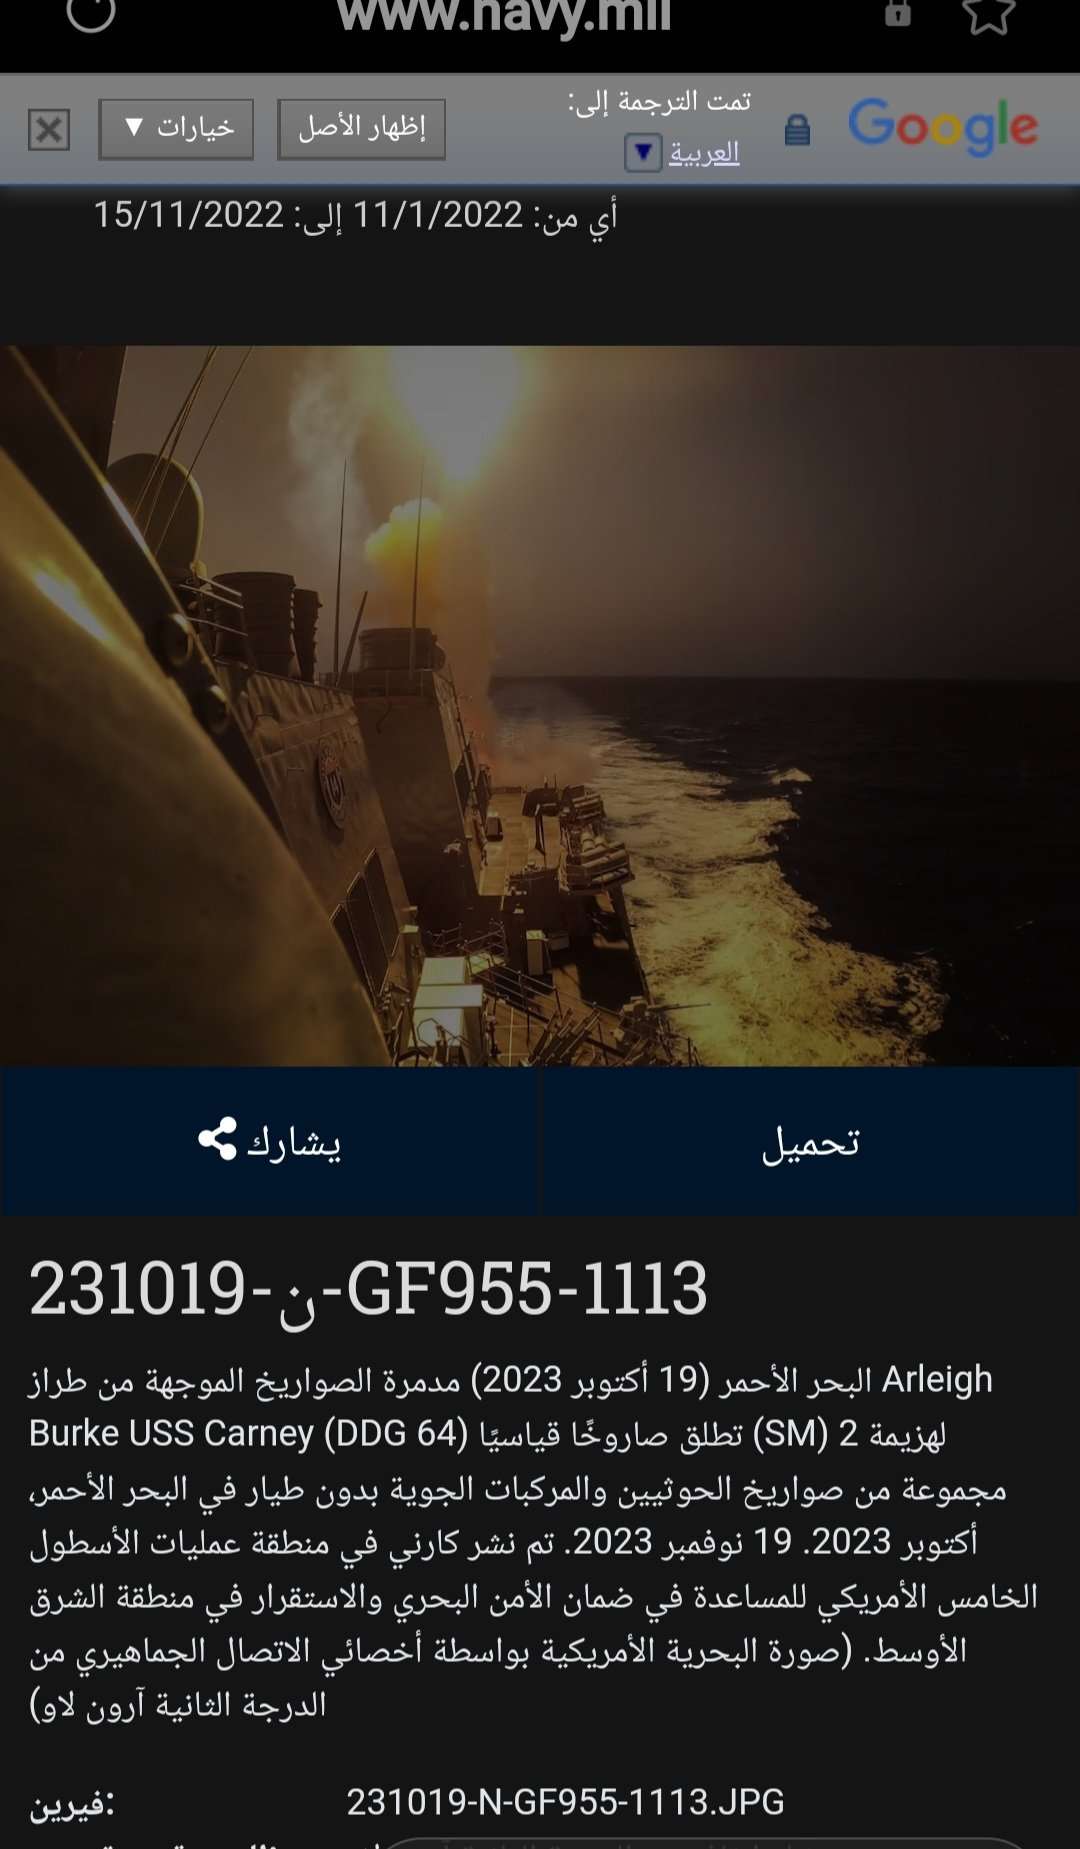 البحرية الامريكية تتراجع عن اعلان تعرضها لهجوم ثاني من قبل الحوثيين في البحر الاحمر